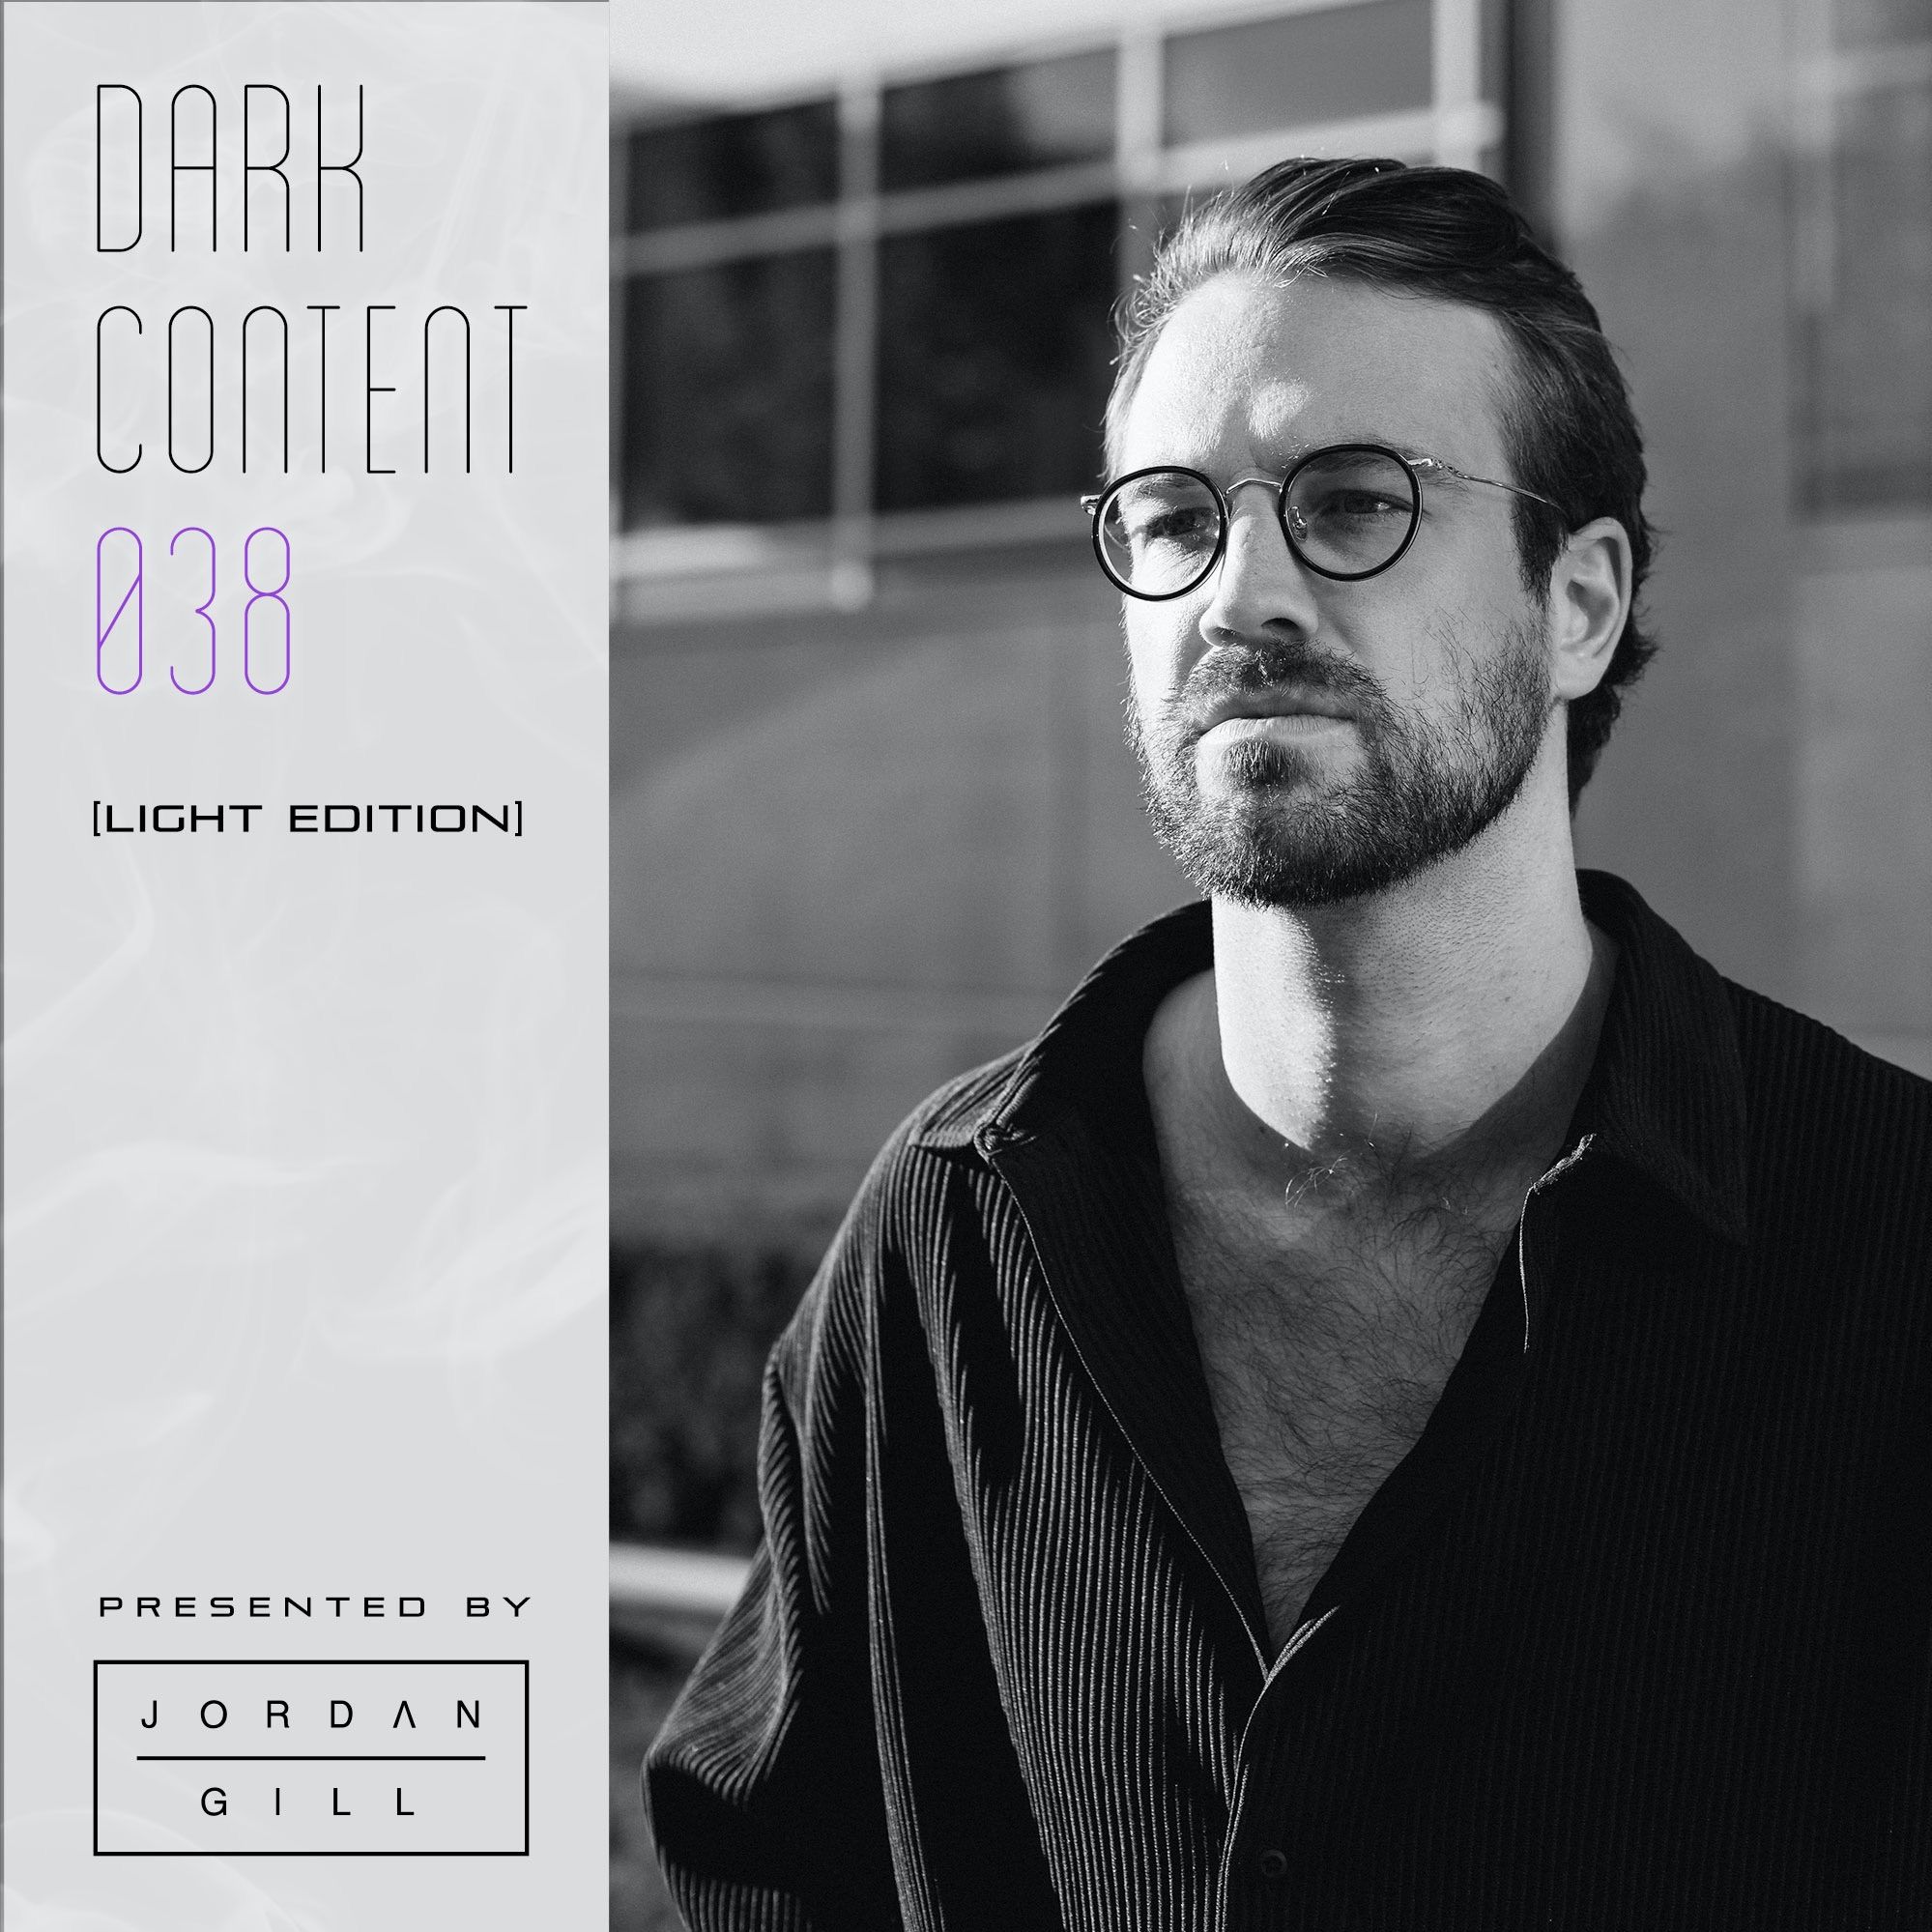 دانلود Dark Content 038 [Light Edition]